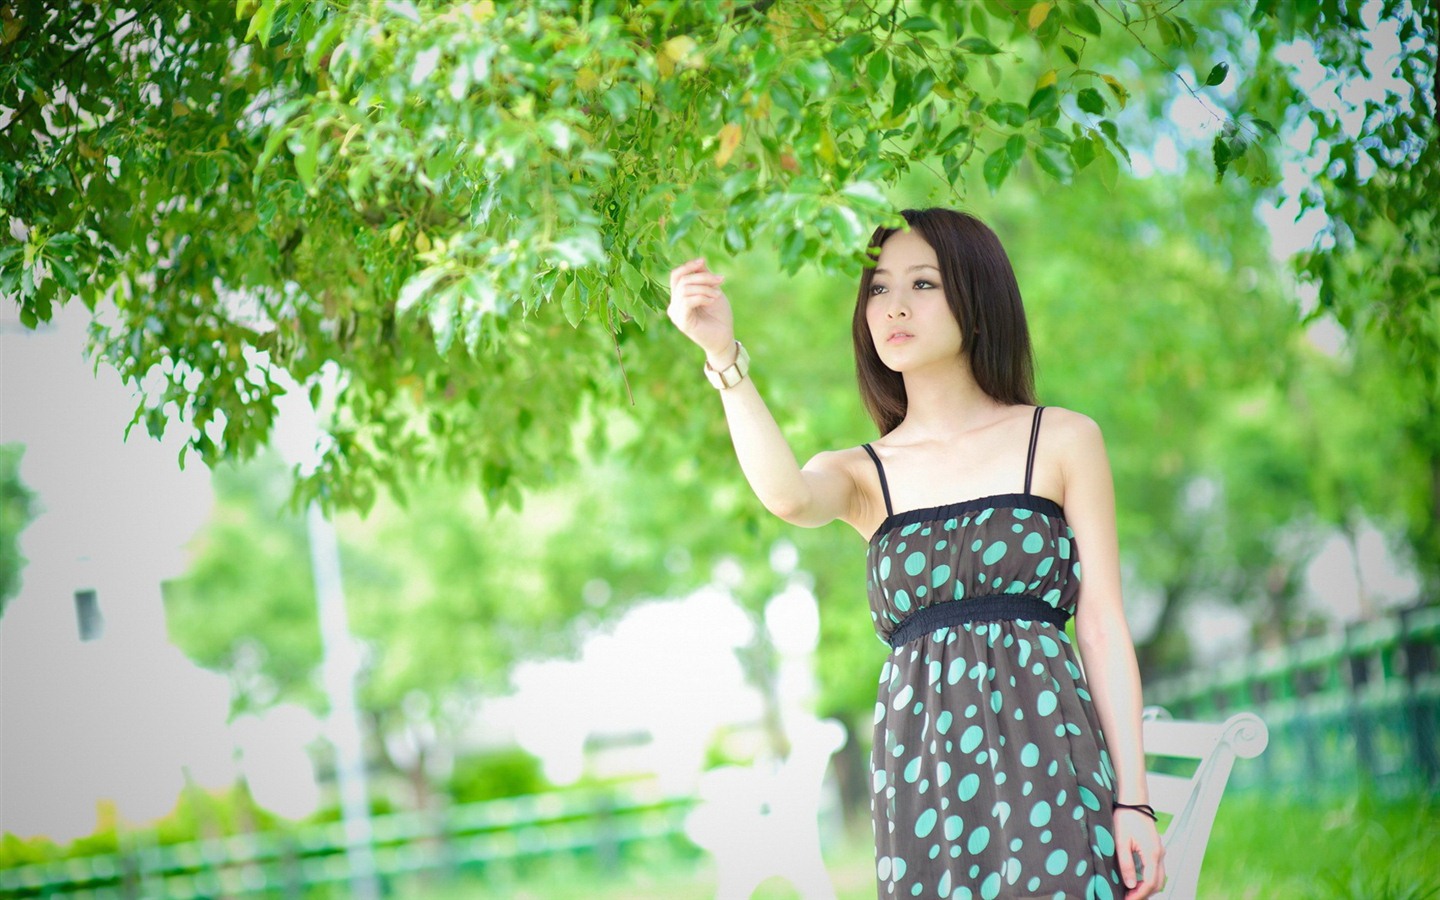 Taiwan fruit girl beautiful wallpapers (11) #10 - 1440x900